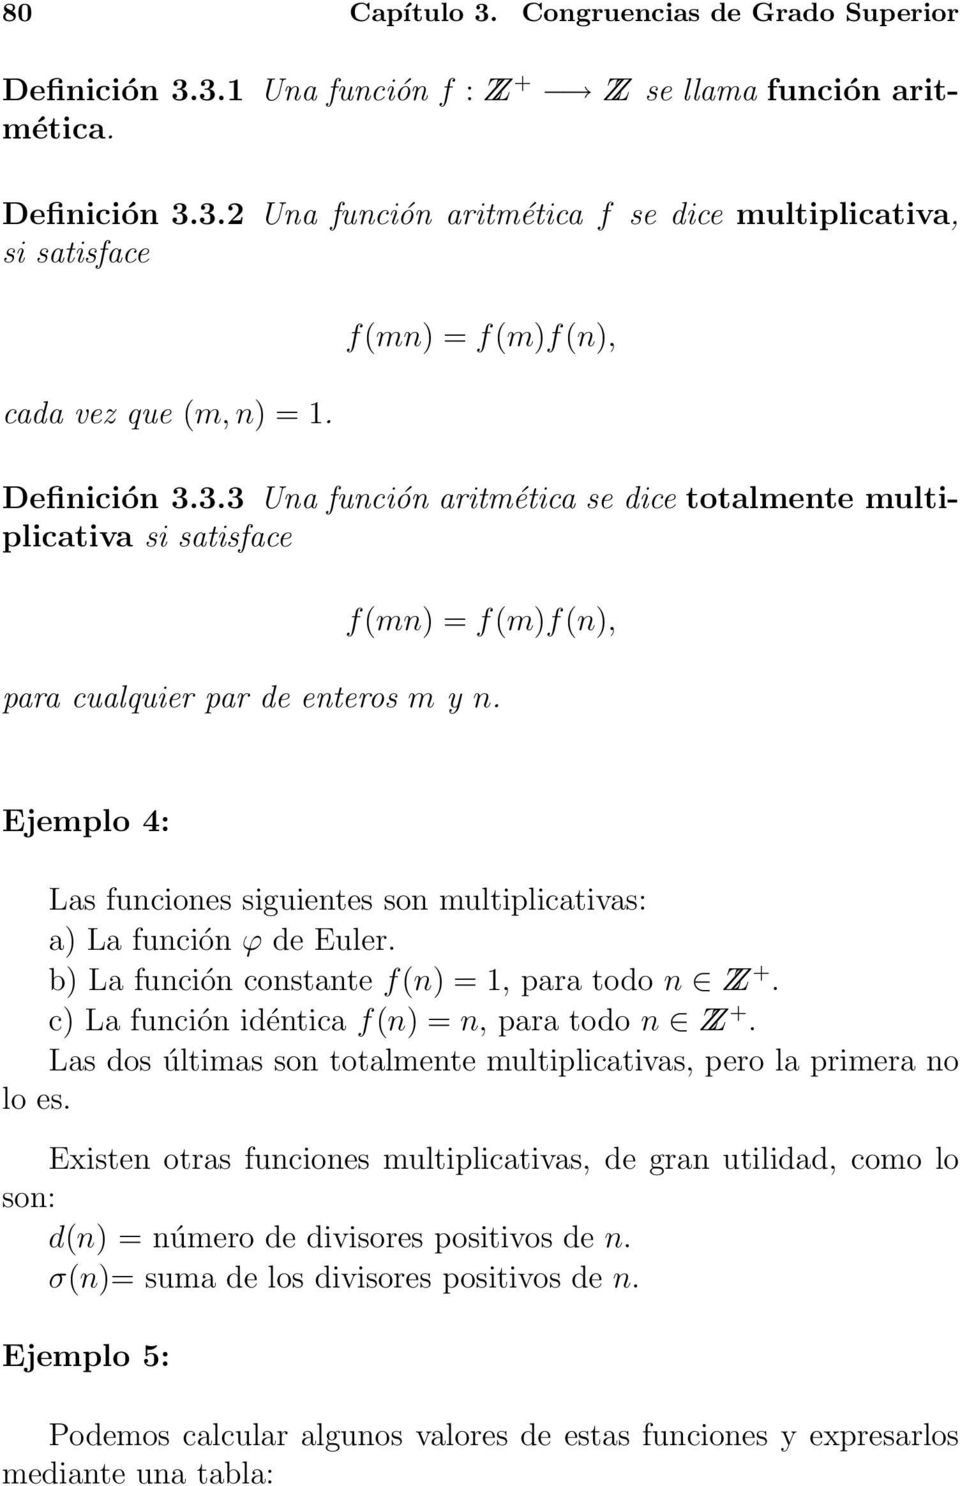 Ejemplo 4: Las funciones siguientes son multiplicativas: a) La función ϕ de Euler. b) La función constante f(n) = 1, para todo n Z +. c) La función idéntica f(n) = n, para todo n Z +.